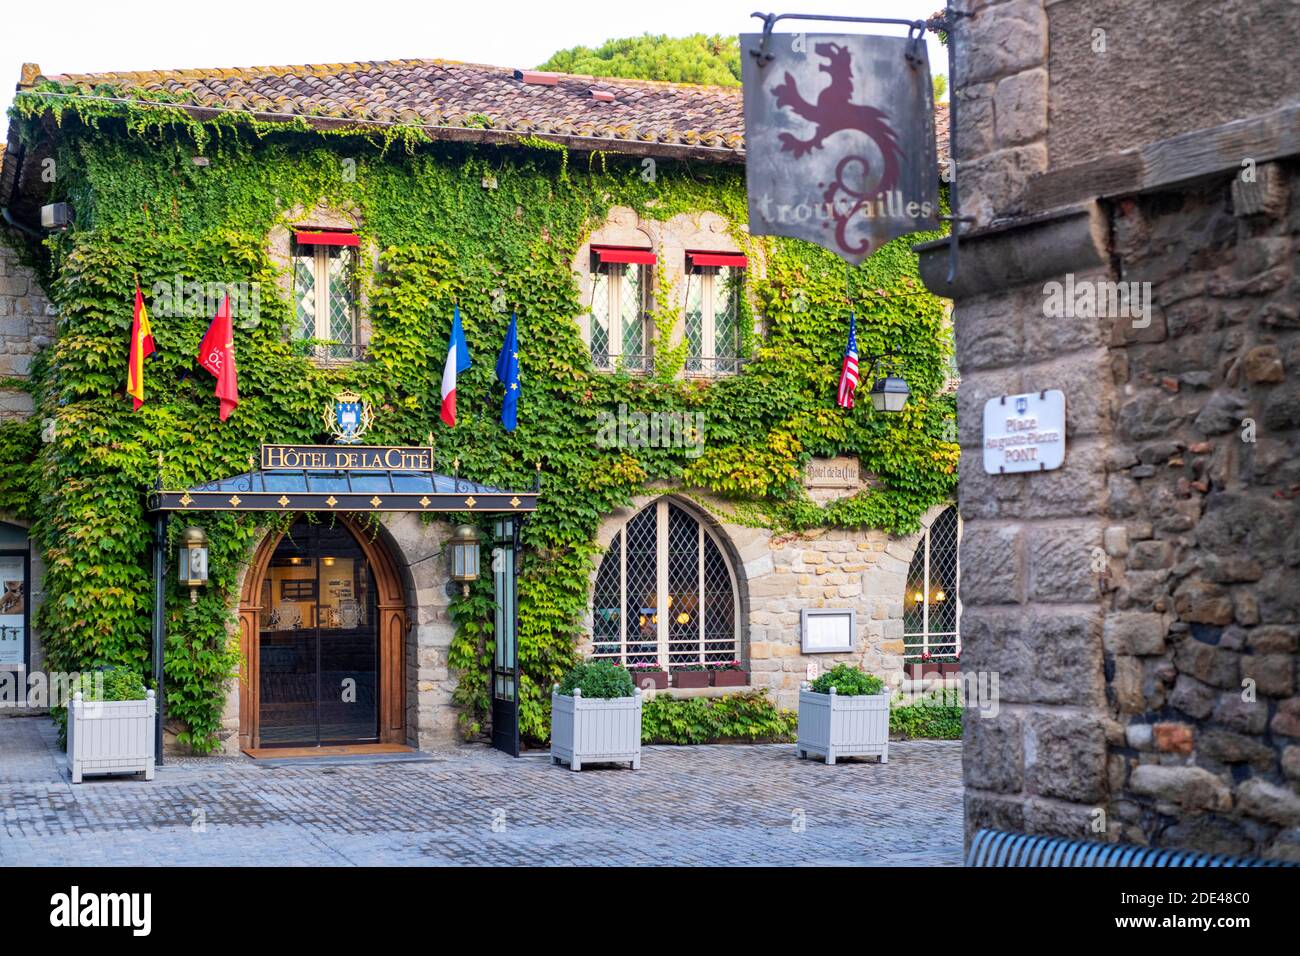 Im Inneren der Stadt Carcassonne, mittelalterliche Stadt als Weltkulturerbe der UNESCO, Harbore d'Aude, Languedoc-Roussillon Midi Pyrenees Aude Frankreich Stockfoto